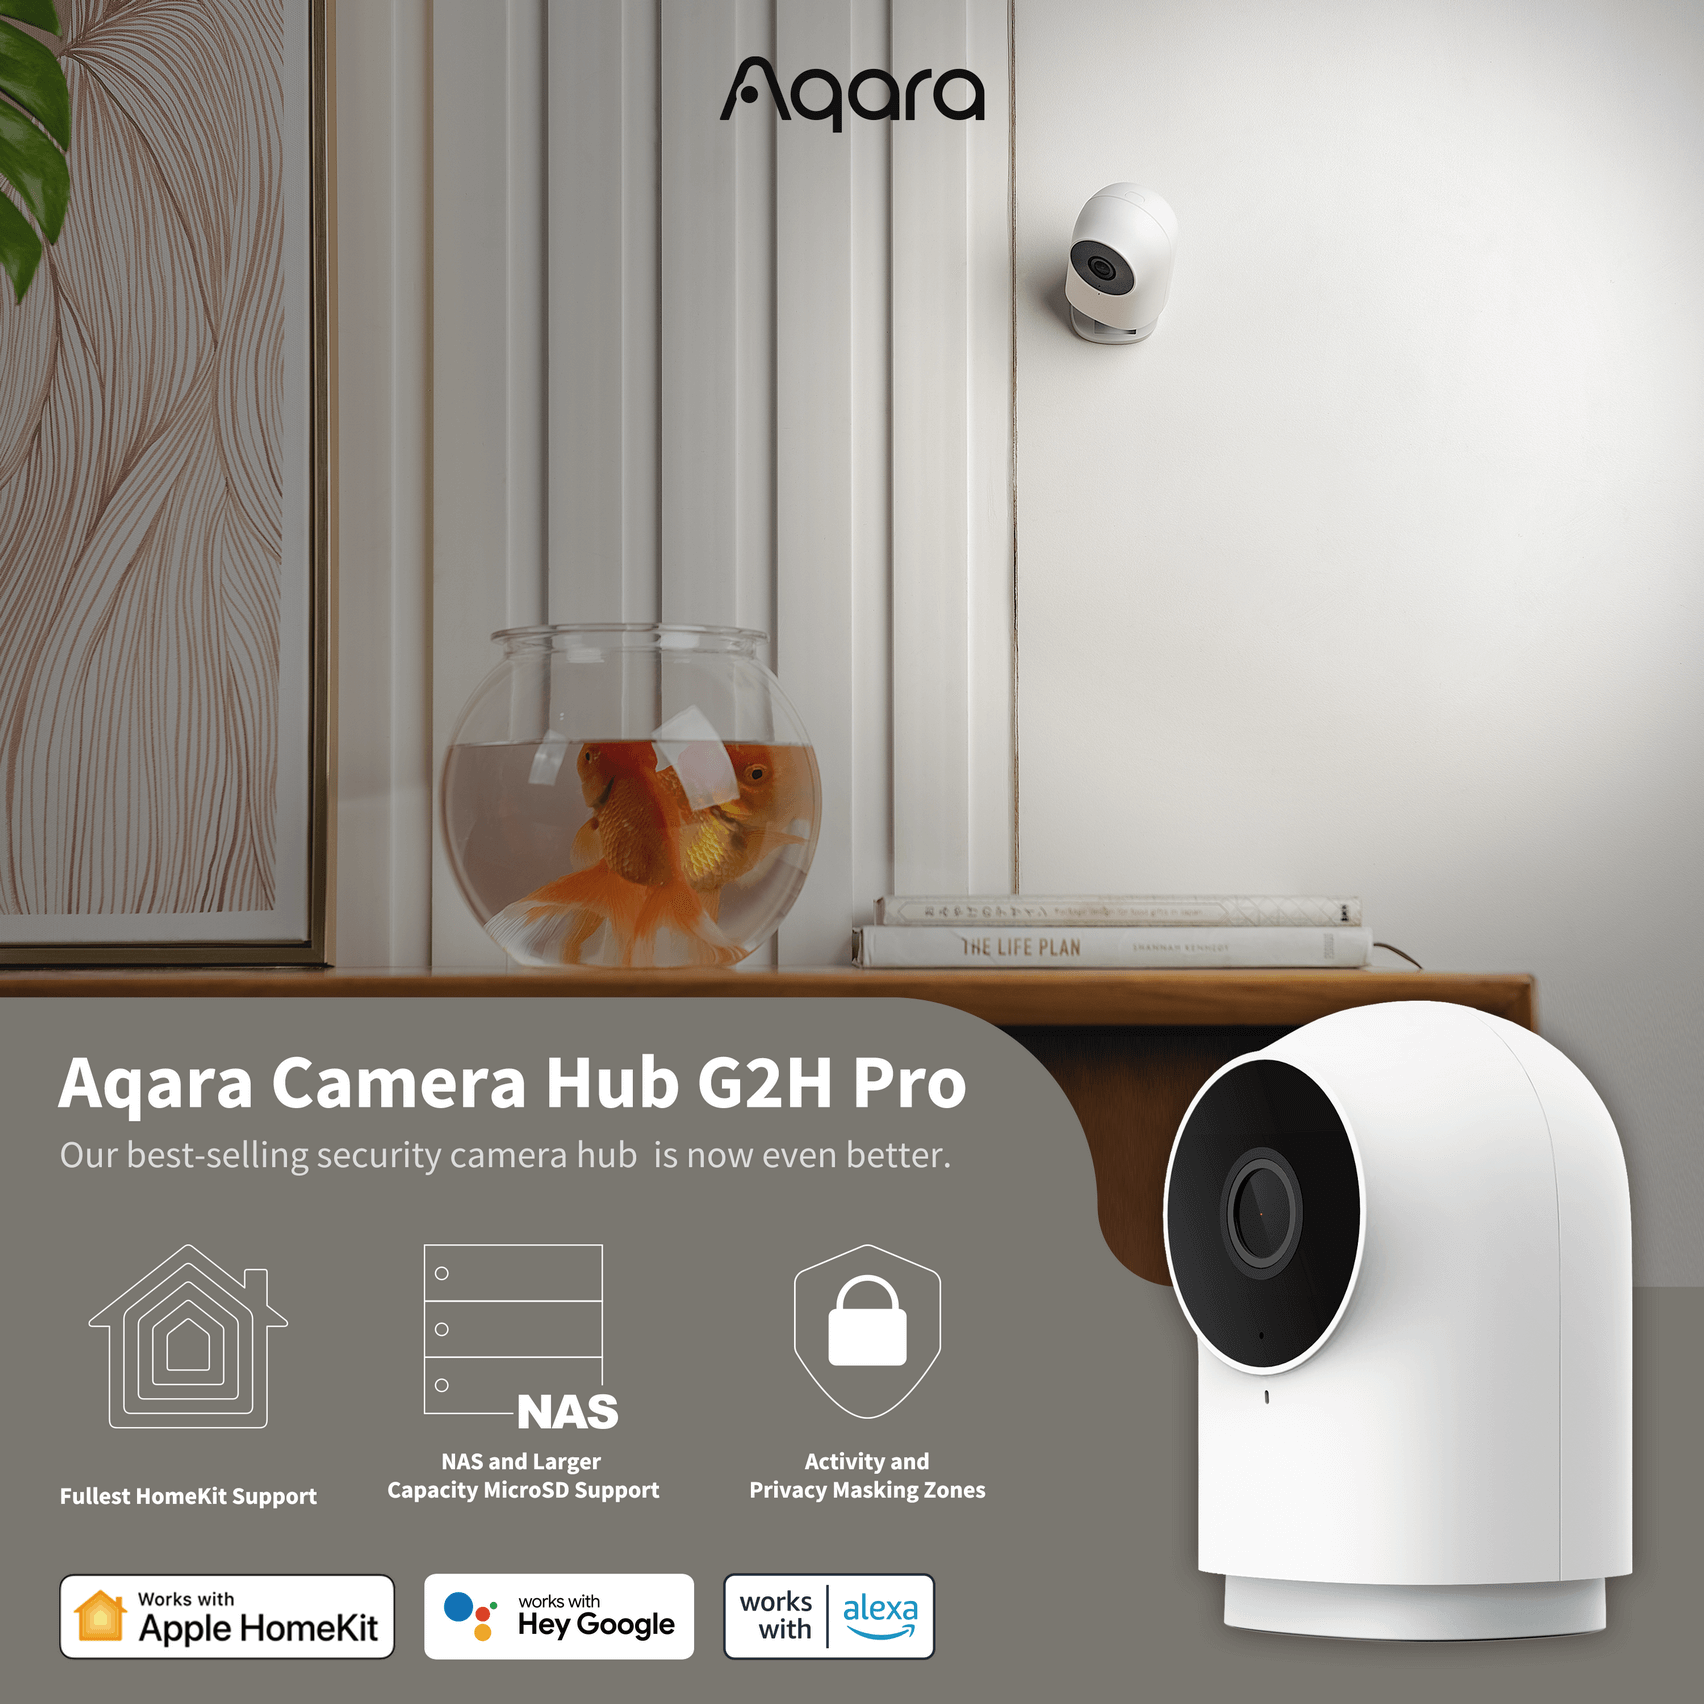 Aqara E1 Camera Review for HomeKit